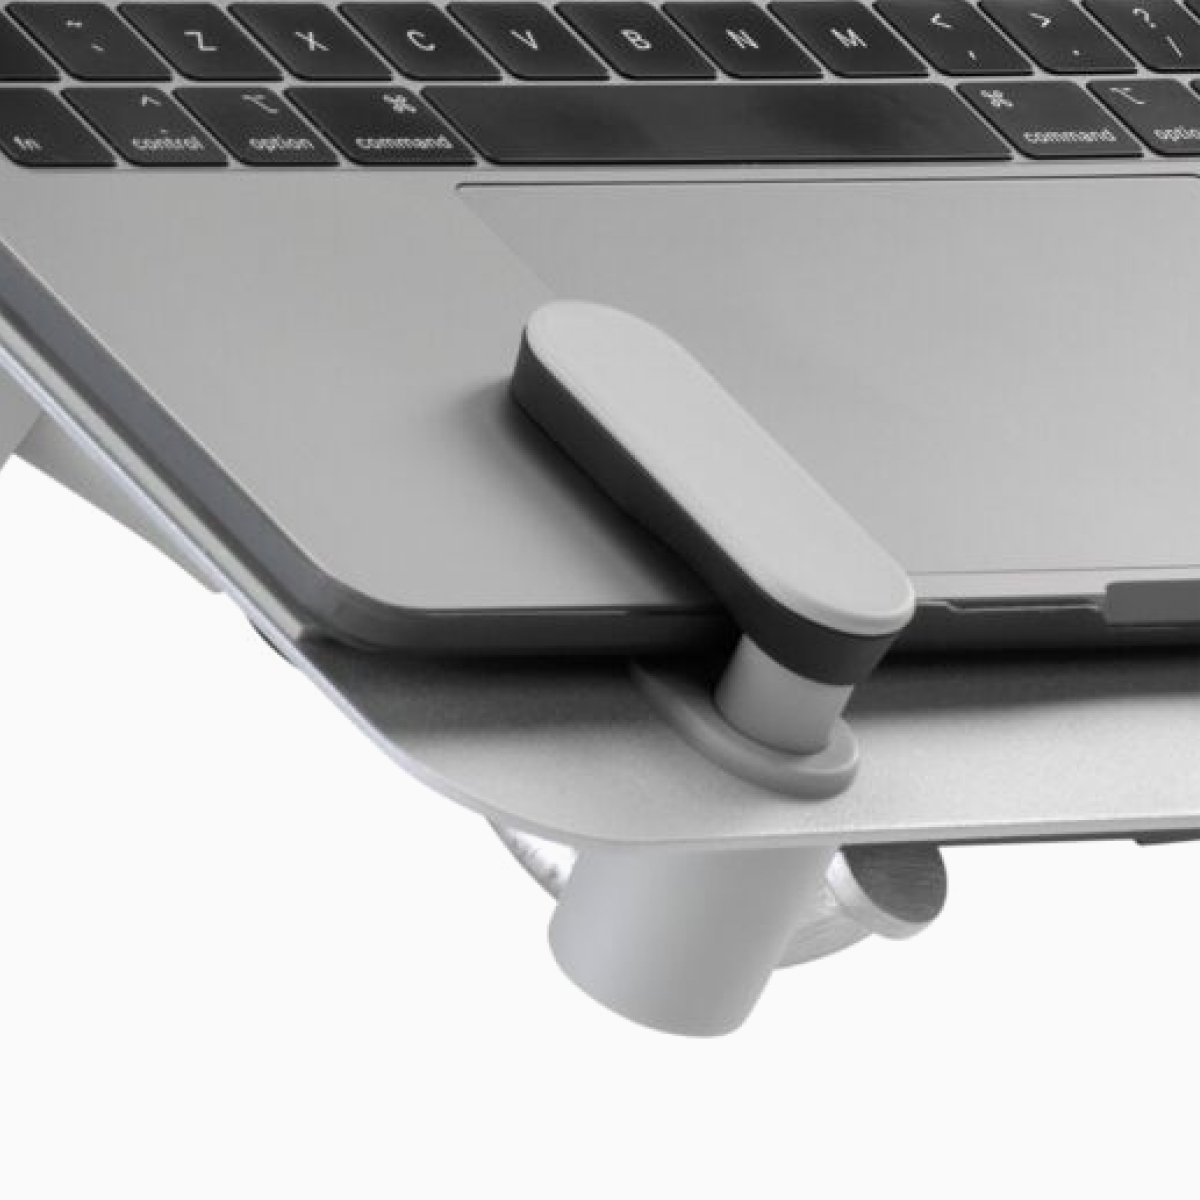 Een close-up beeld van de voorste hoek van een open laptop ondersteund door een Ollin-laptopsteun